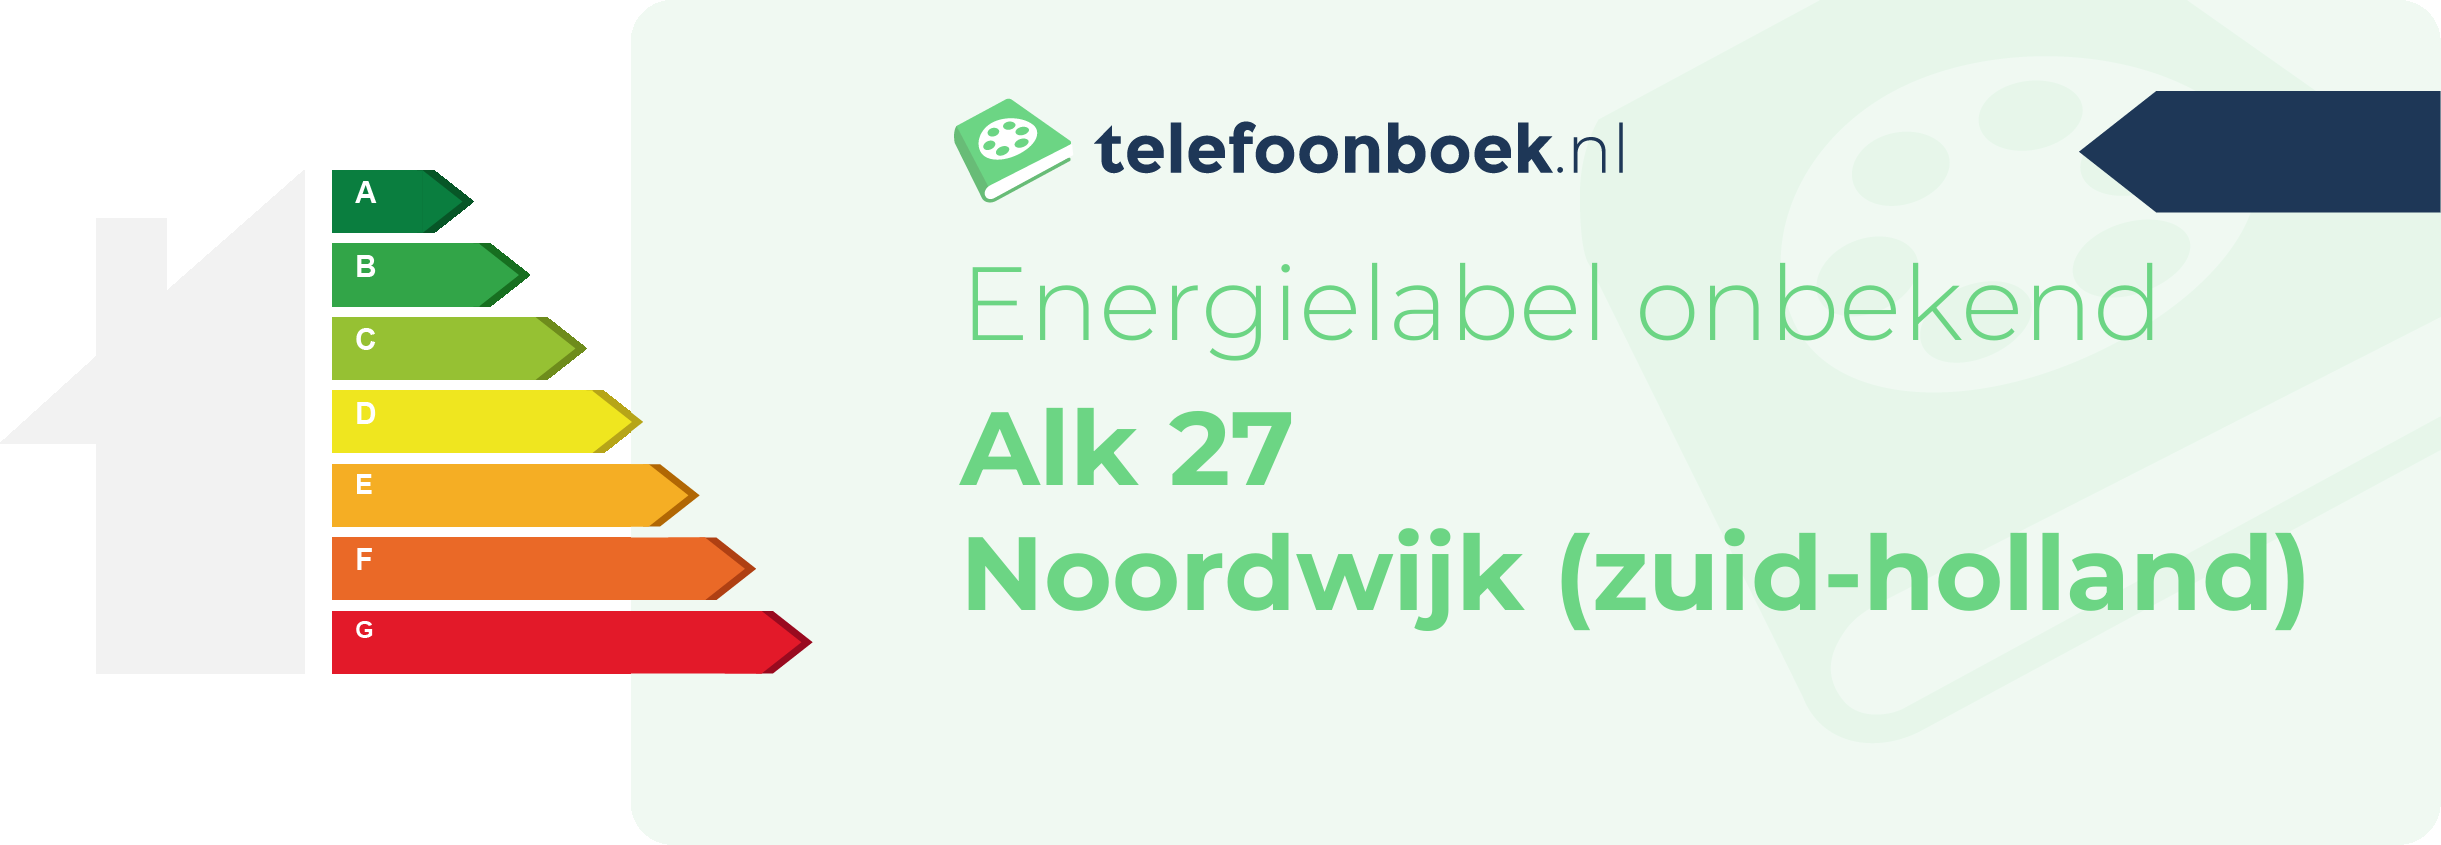 Energielabel Alk 27 Noordwijk (Zuid-Holland)